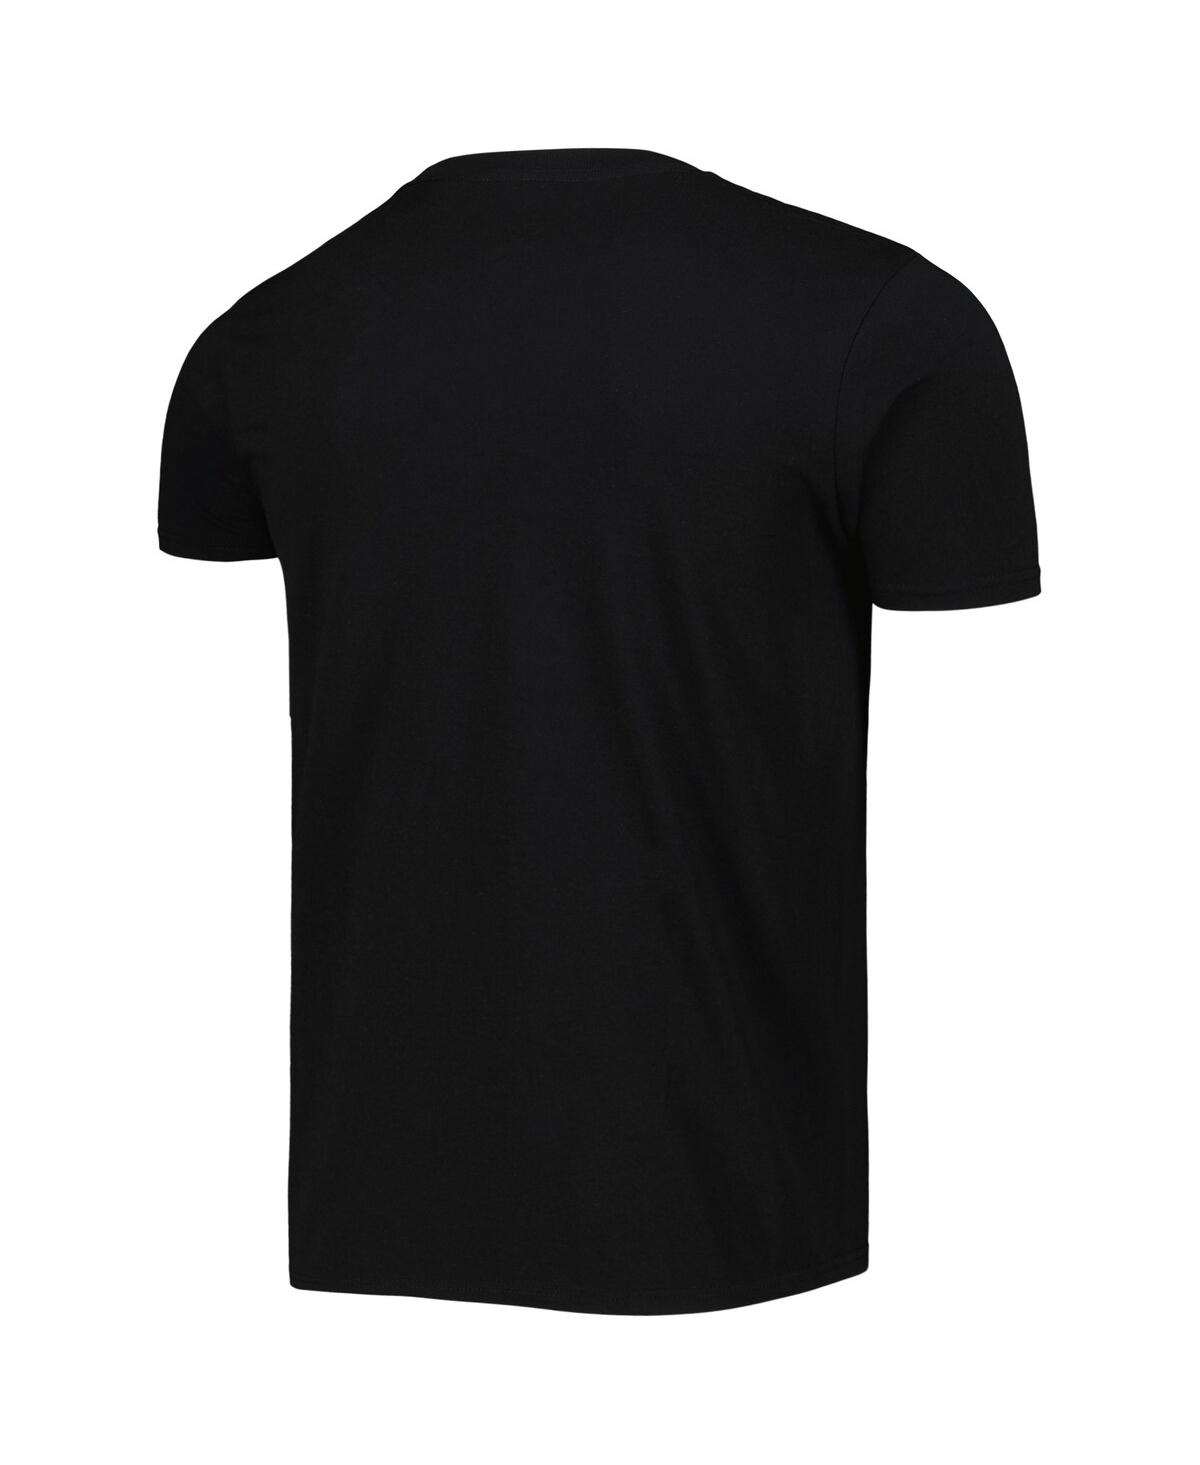 Shop Stitches Men's  Black Birmingham Black Barons Soft Style T-shirt